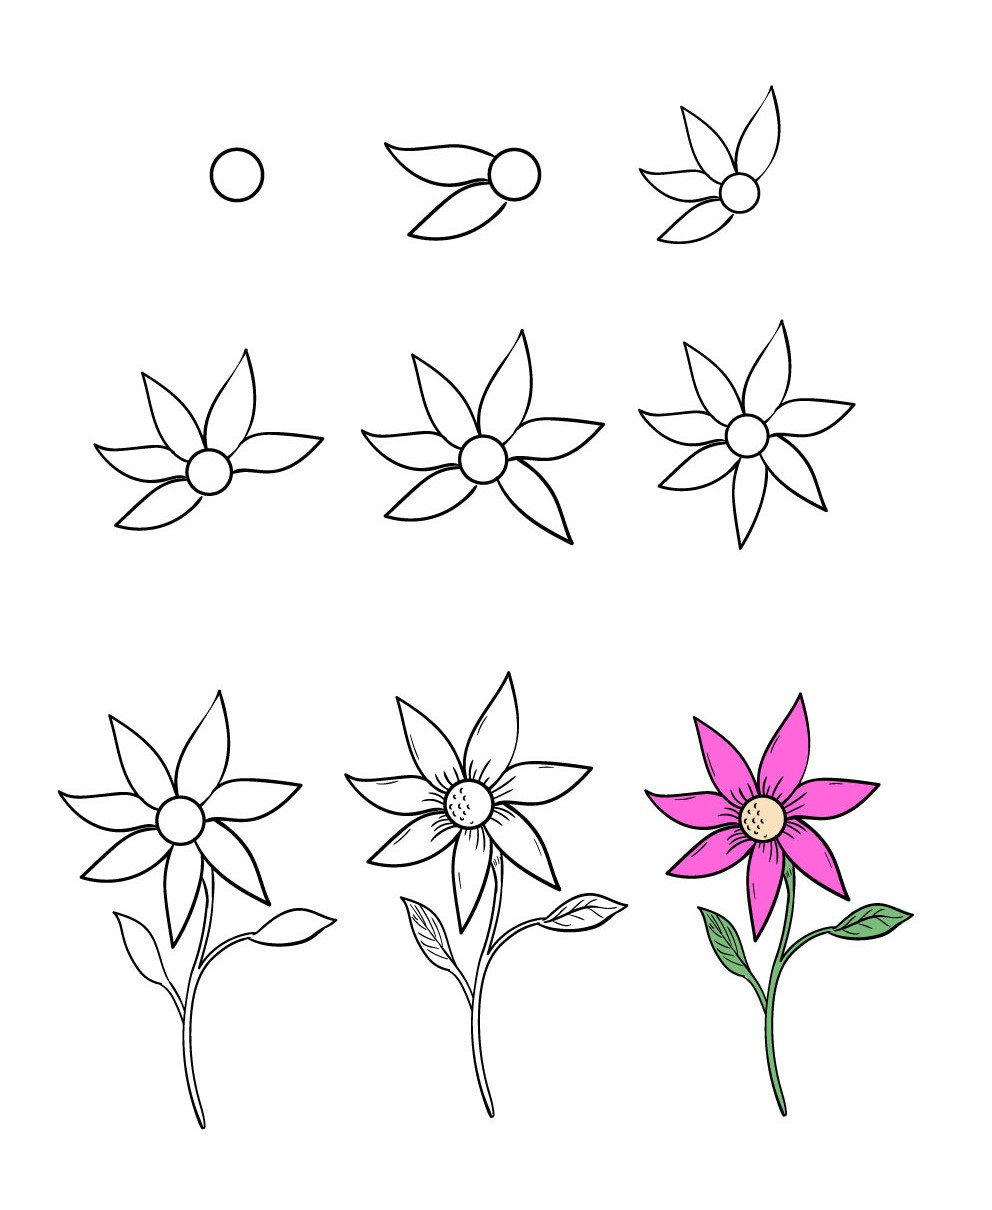 Vẽ Hoa Cúc bằng bút chì  How to draw a Chrysanthemum  YouTube